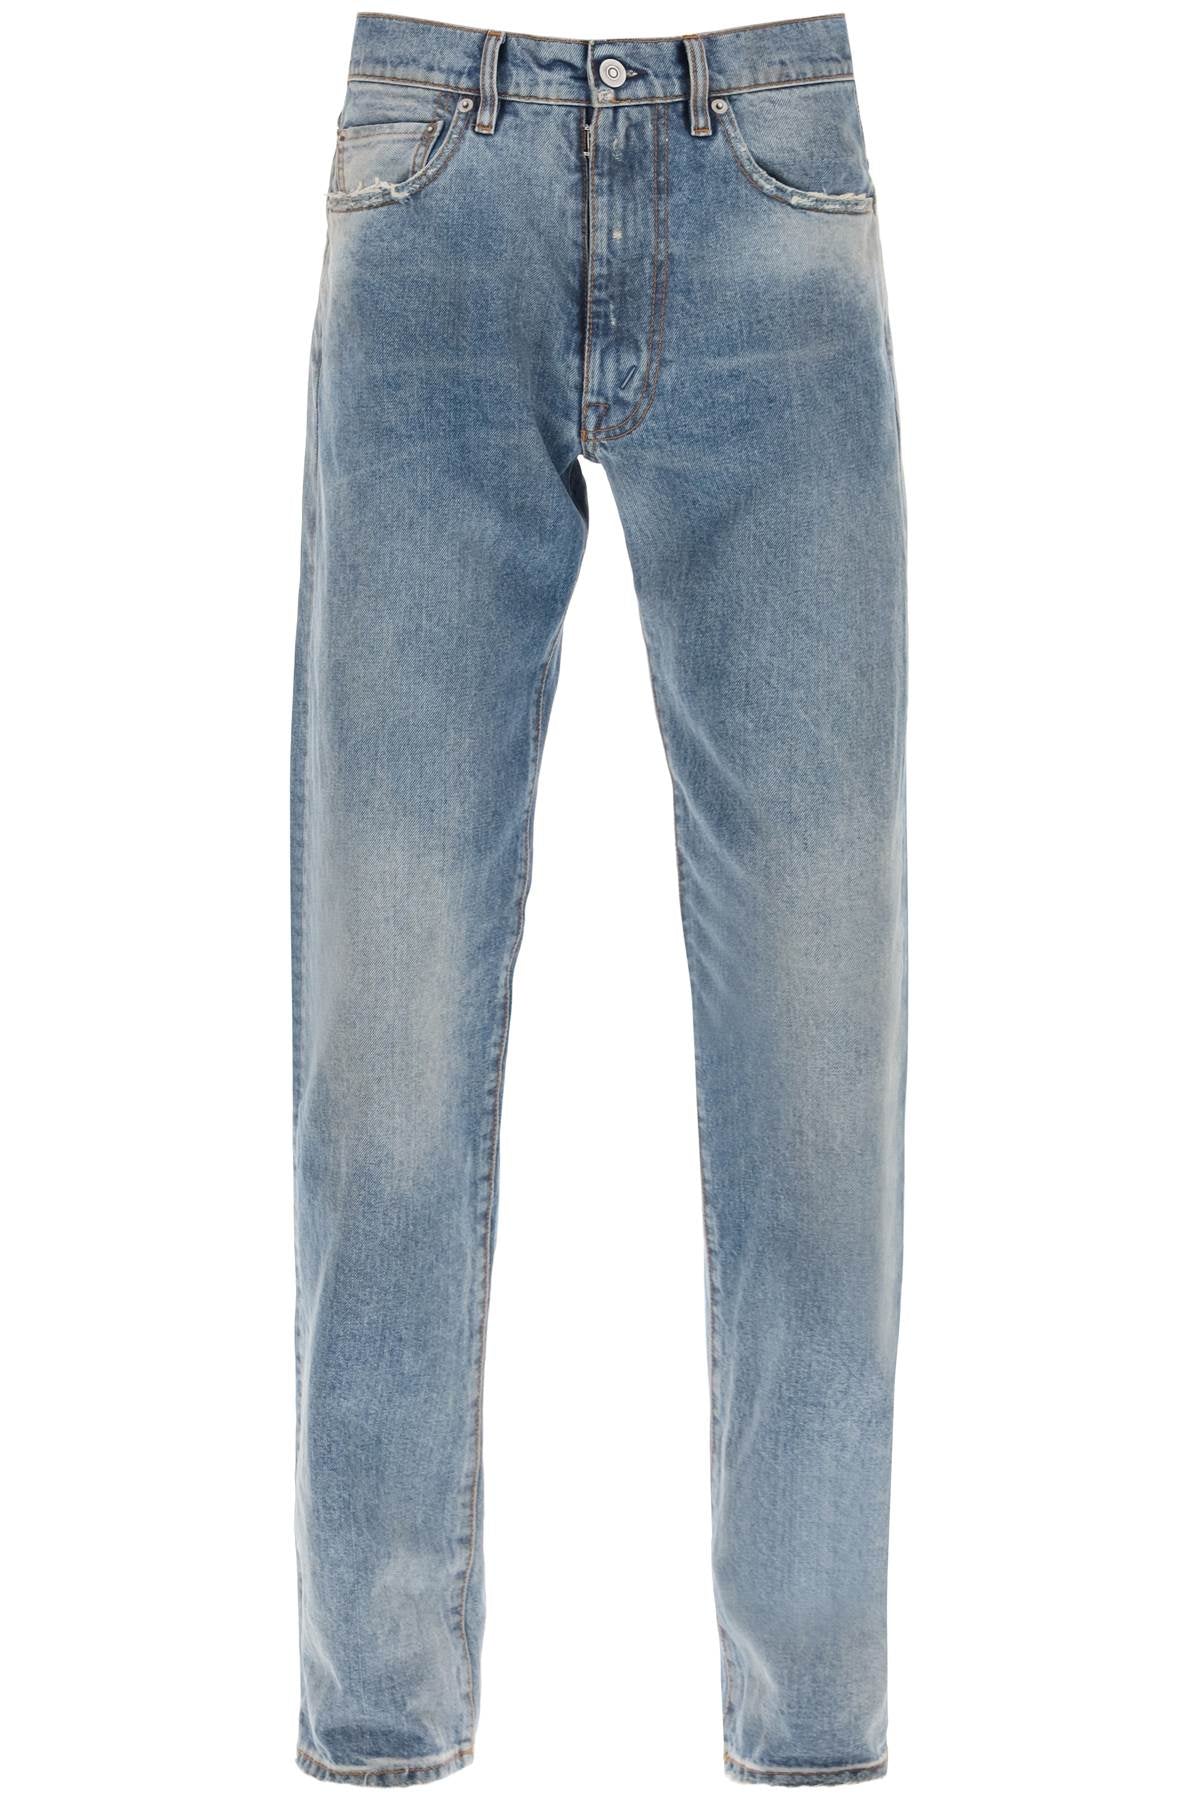 Maison margiela stone-washed loose jeans S67LA0027 S30561 LIGHT INDIGO